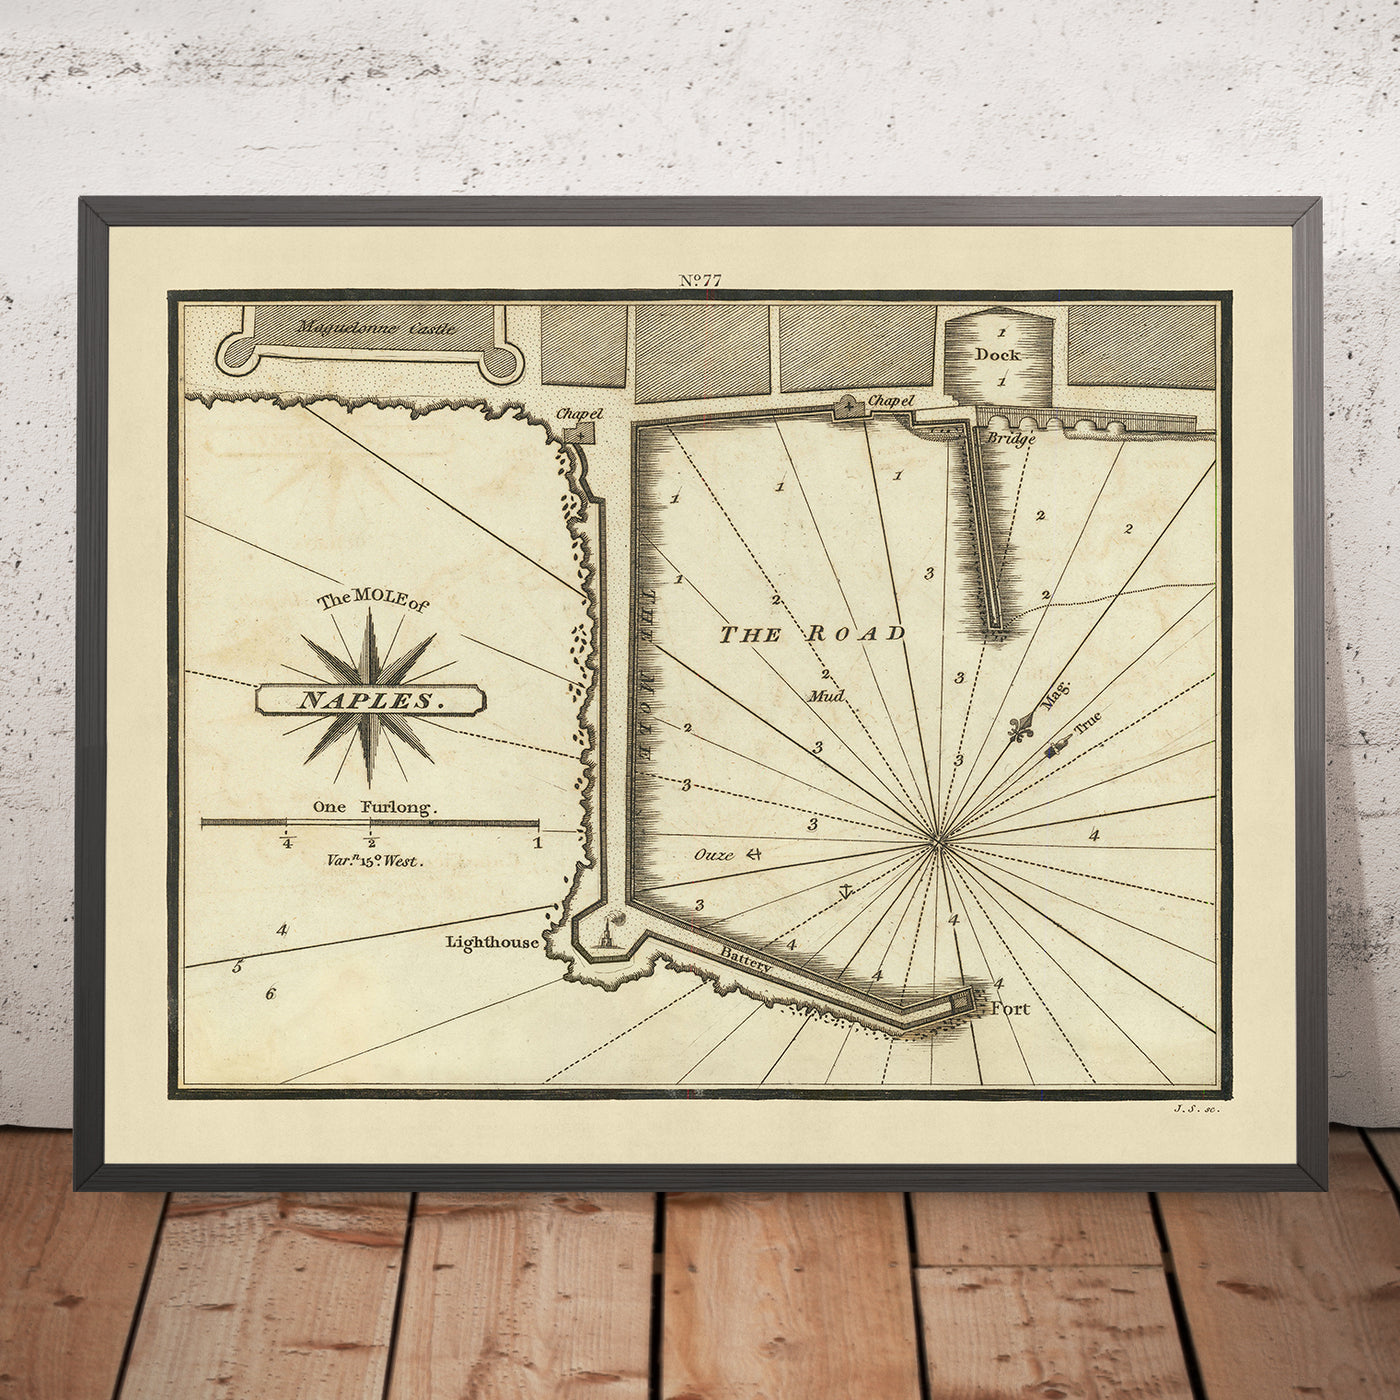 Carte nautique du vieux môle de Naples par Heather, 1802 : sondages, monuments, histoire du port